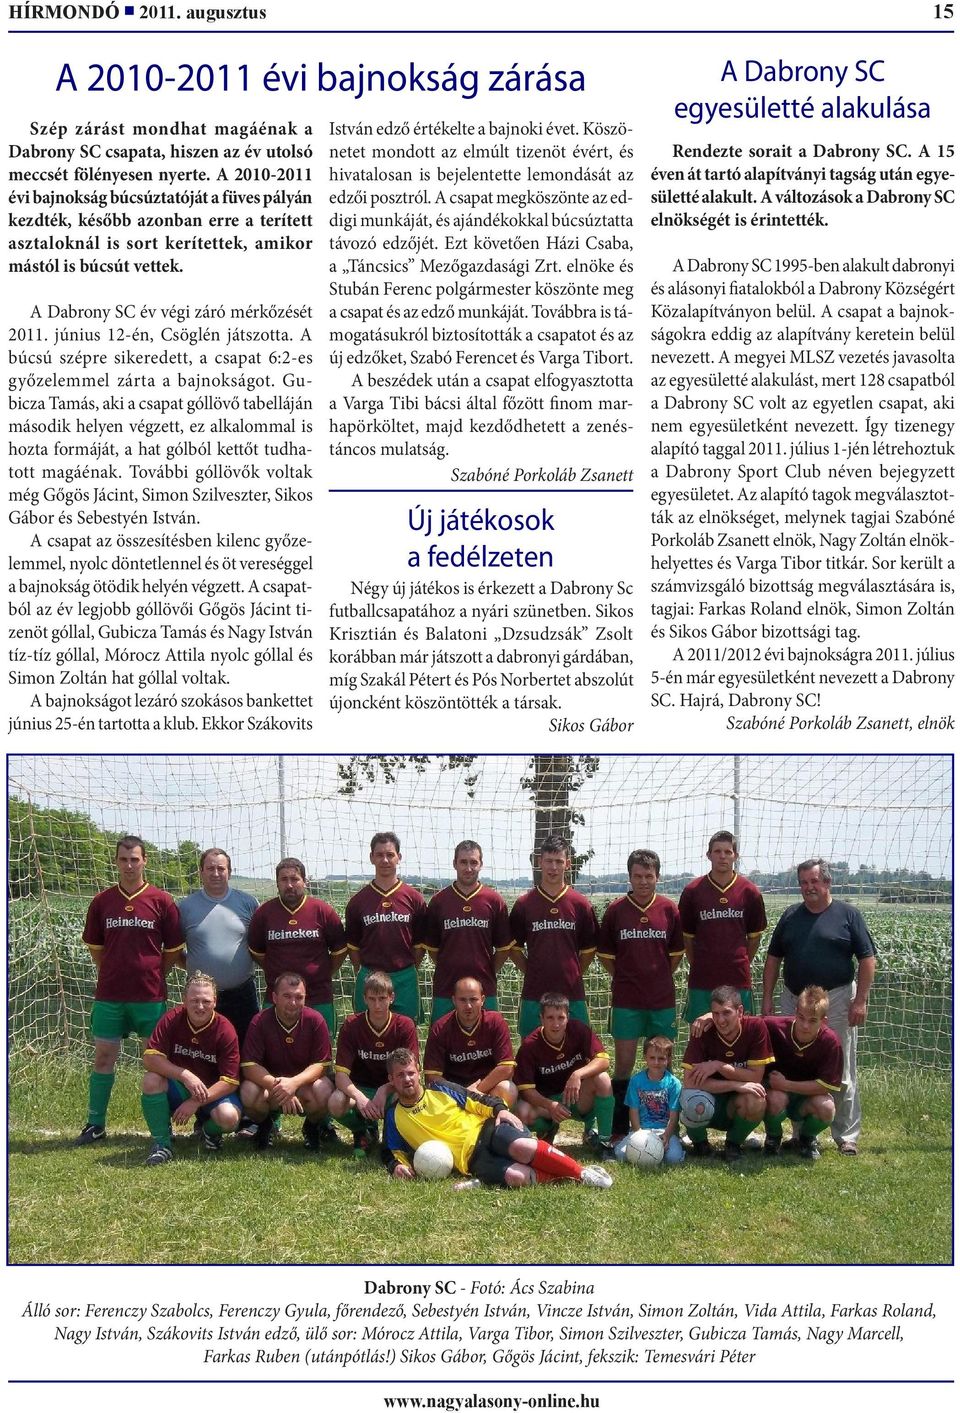 A Dabrony SC év végi záró mérkőzését 2011. június 12-én, Csöglén játszotta. A búcsú szépre sikeredett, a csapat 6:2-es győzelemmel zárta a bajnokságot.